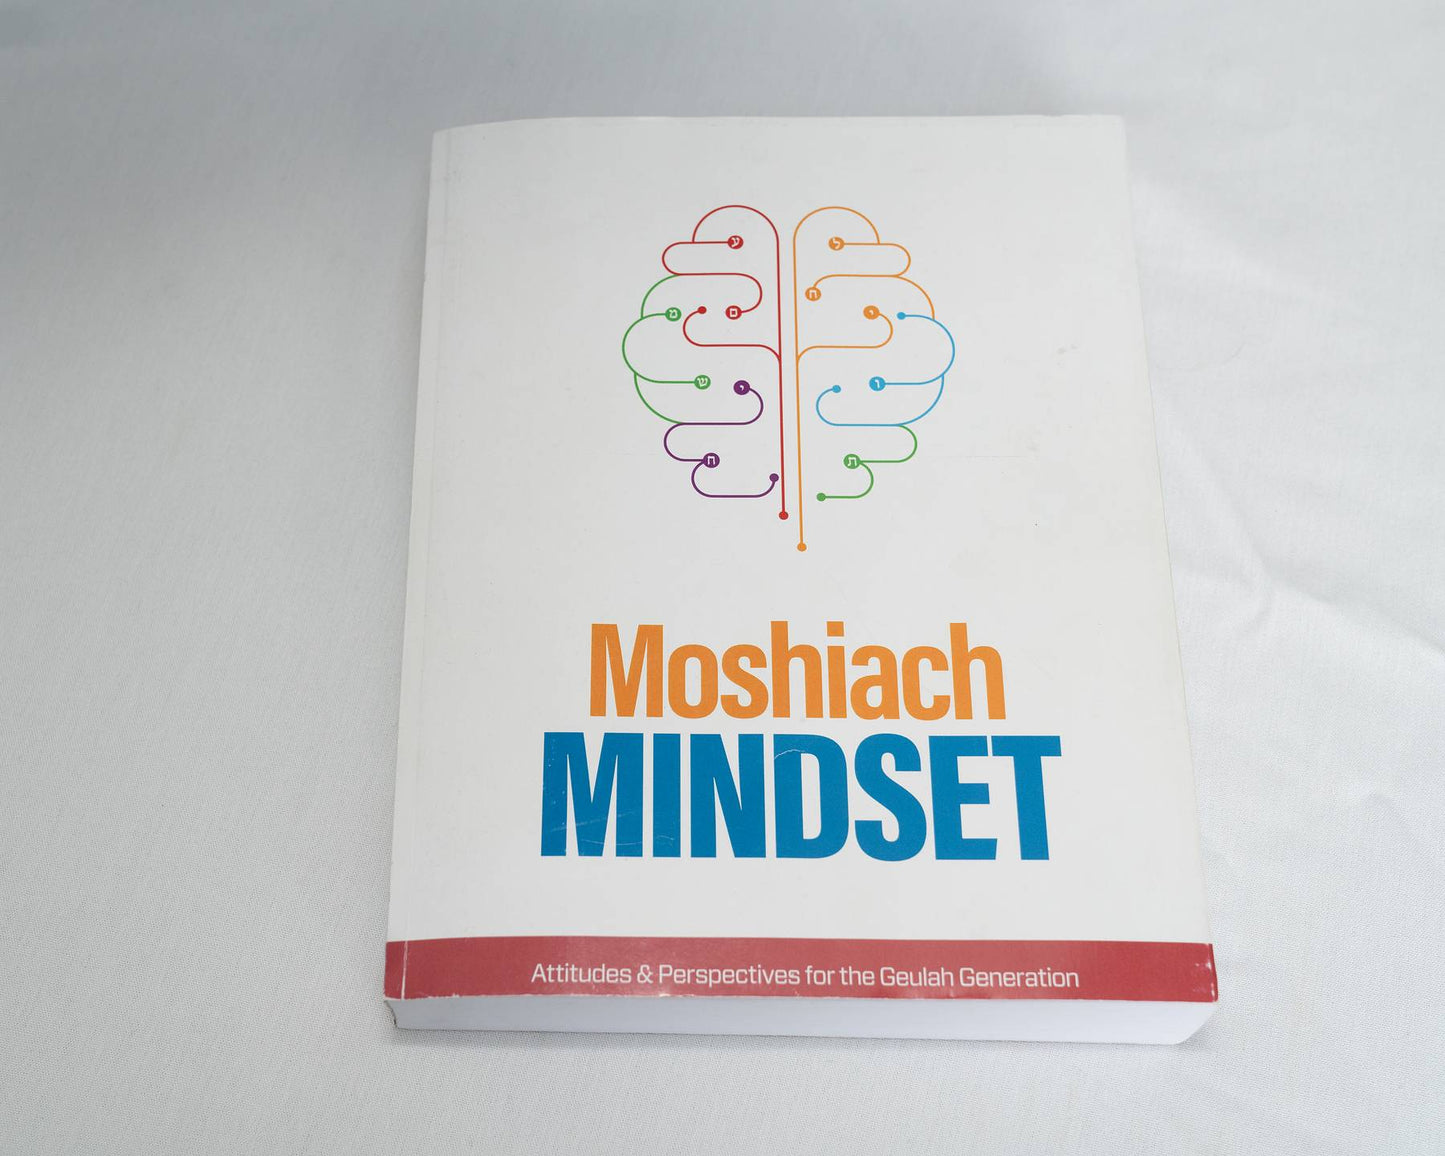 Moshiach Mindset Textbook